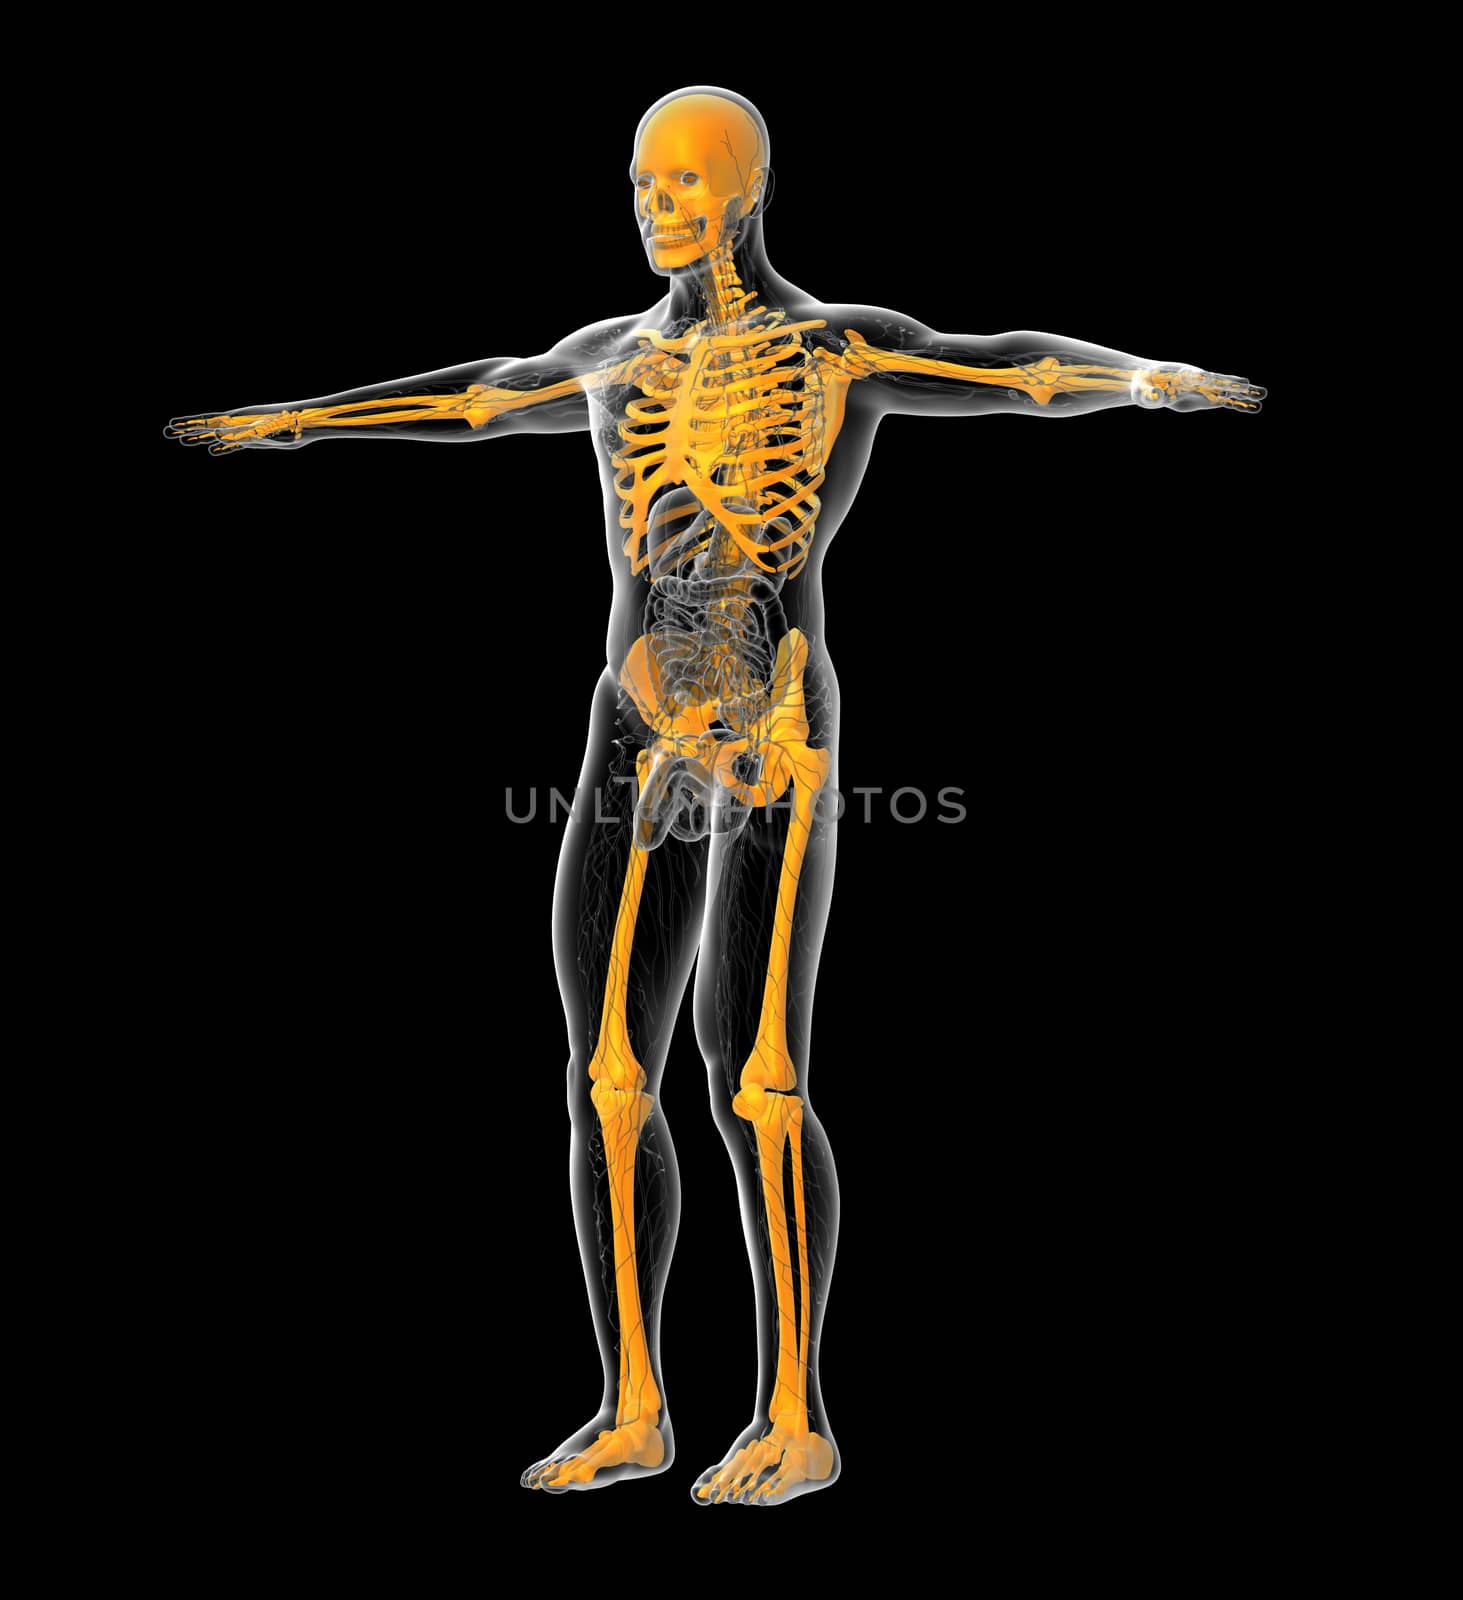 3D medical illustration of the human skeleton - side view